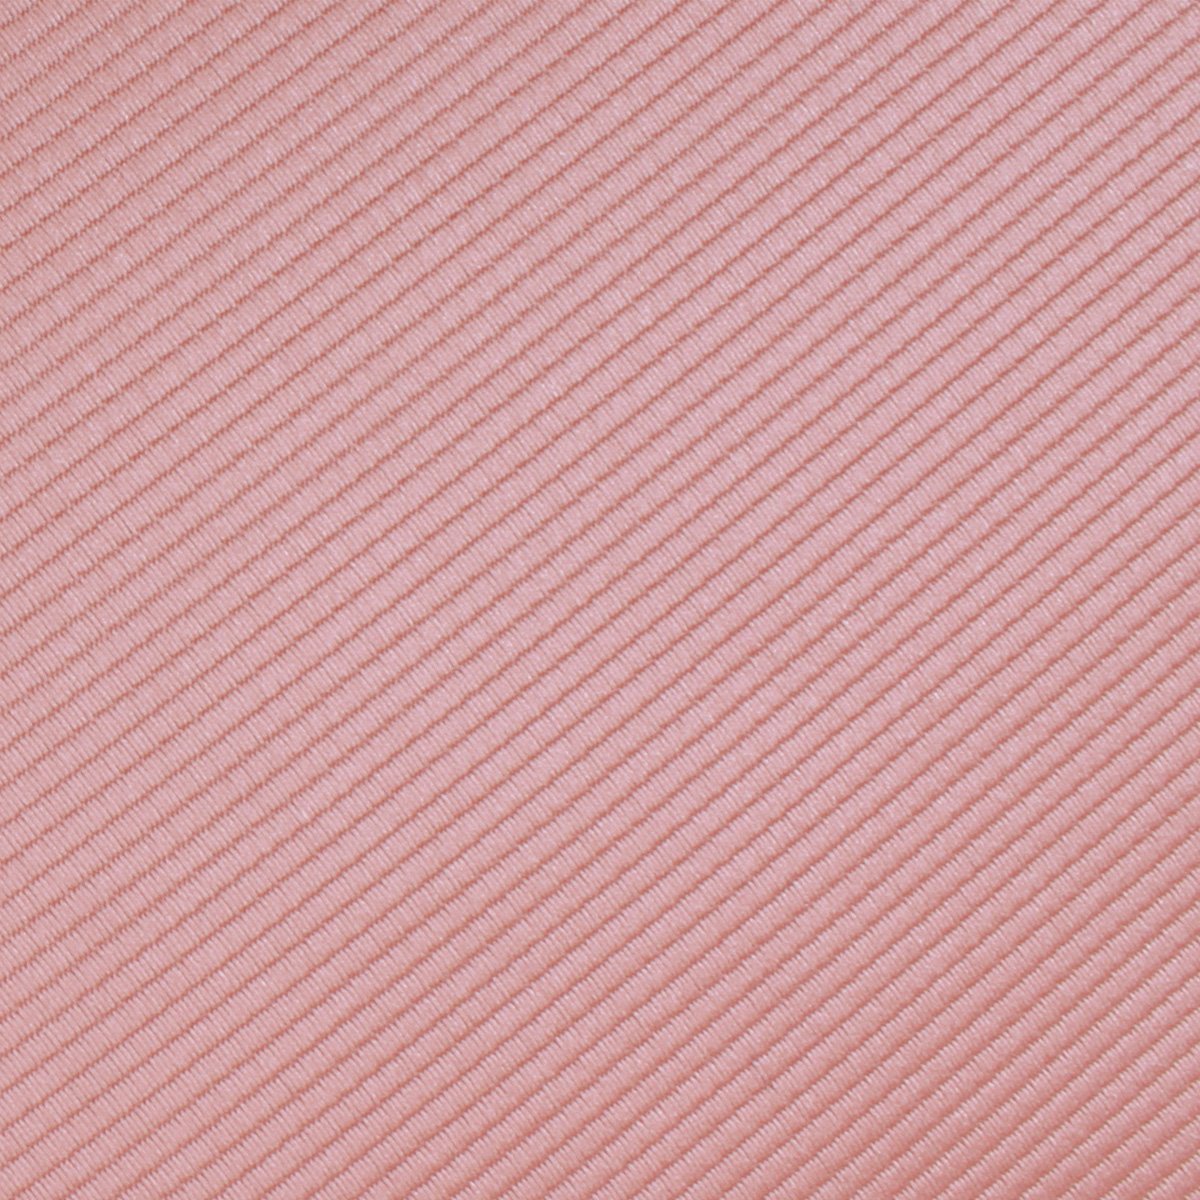 Dusty Blush Pink Twill Necktie Fabric